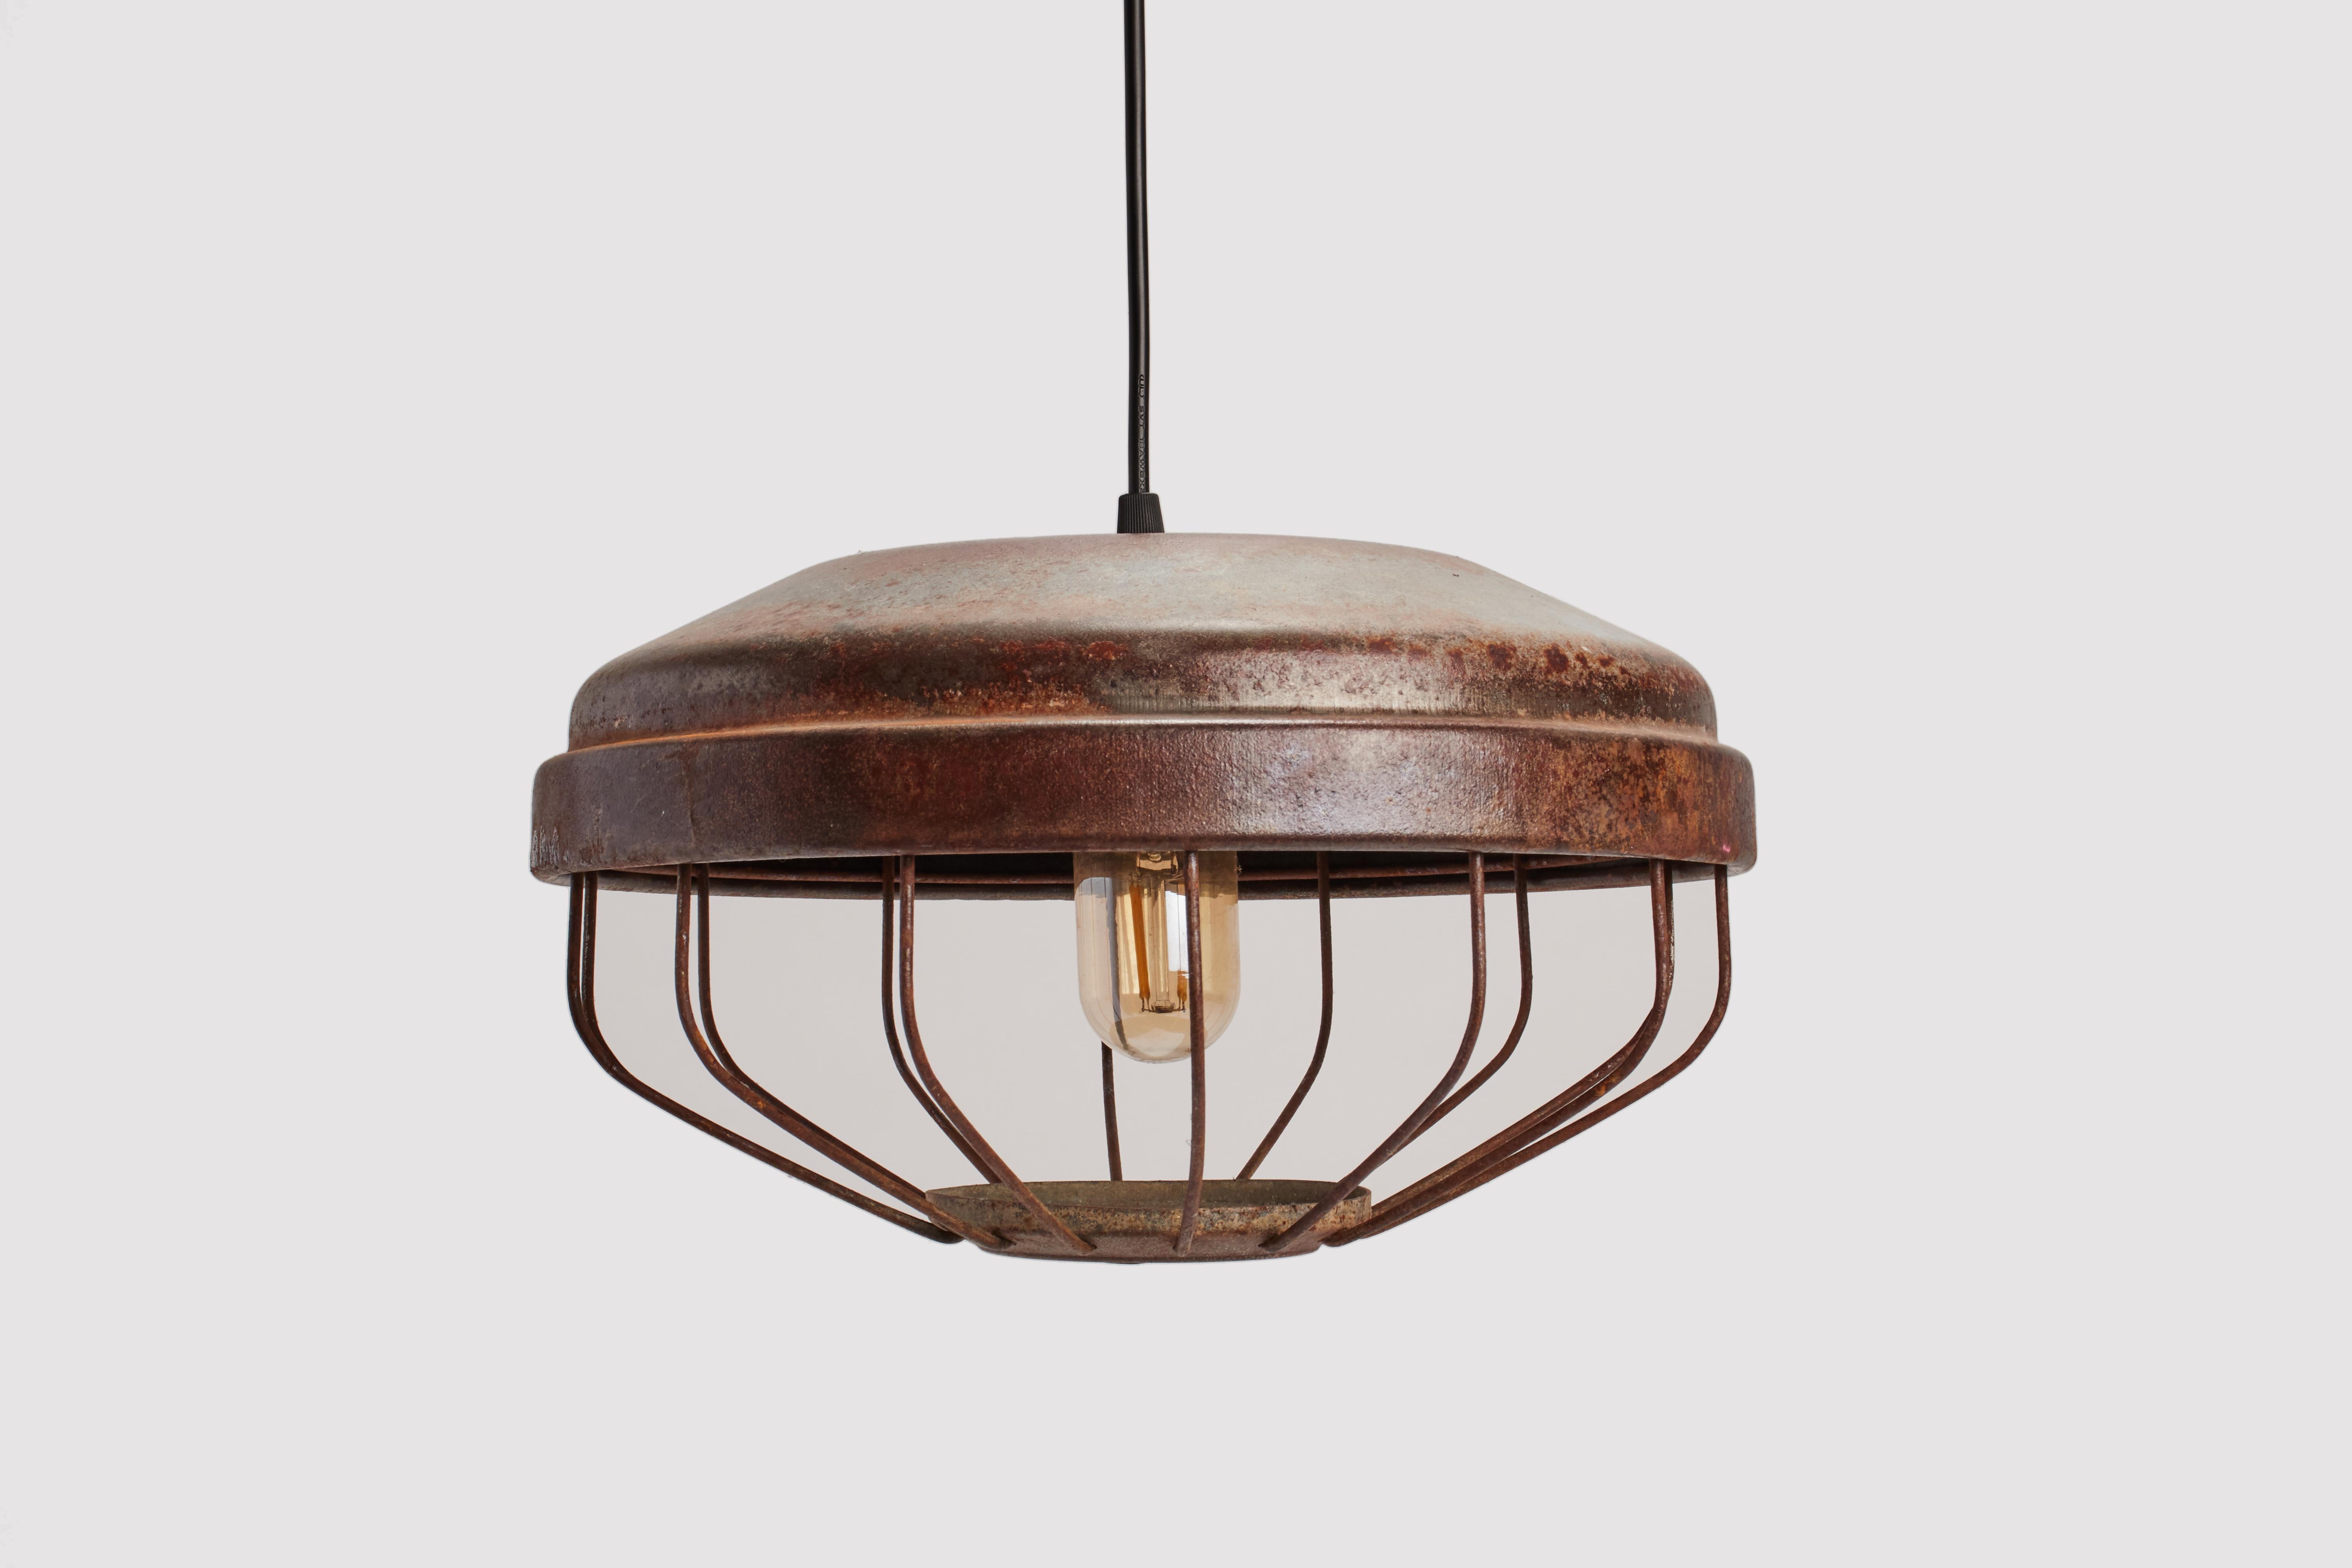 Lampes industrielles suspendues en métal émaillé, de couleur vert cuivre, avec cage en fer, pour protéger l'ampoule. USA vers 1920.  